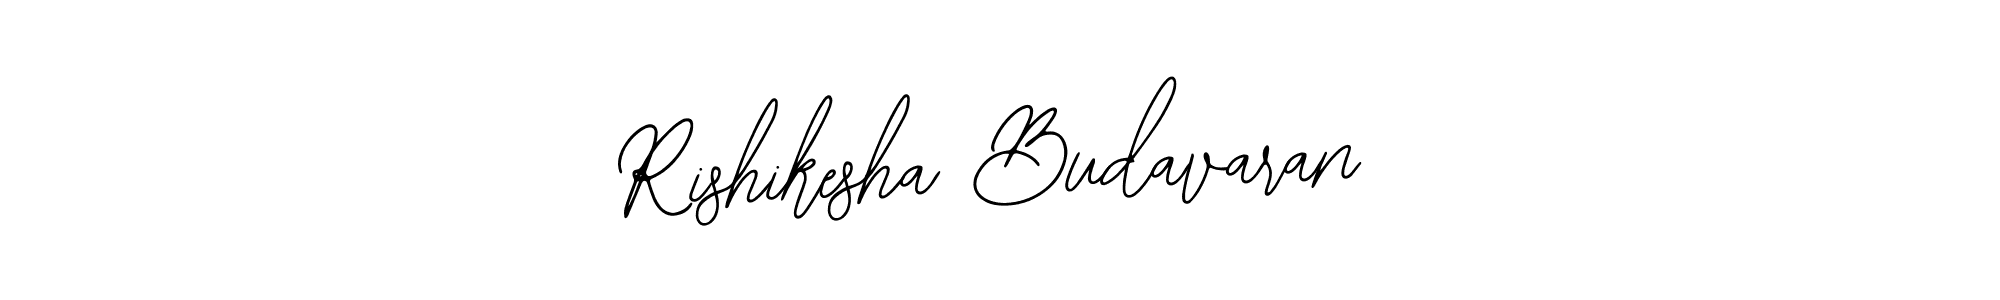 How to Draw Rishikesha Budavaran signature style? Bearetta-2O07w is a latest design signature styles for name Rishikesha Budavaran. Rishikesha Budavaran signature style 12 images and pictures png